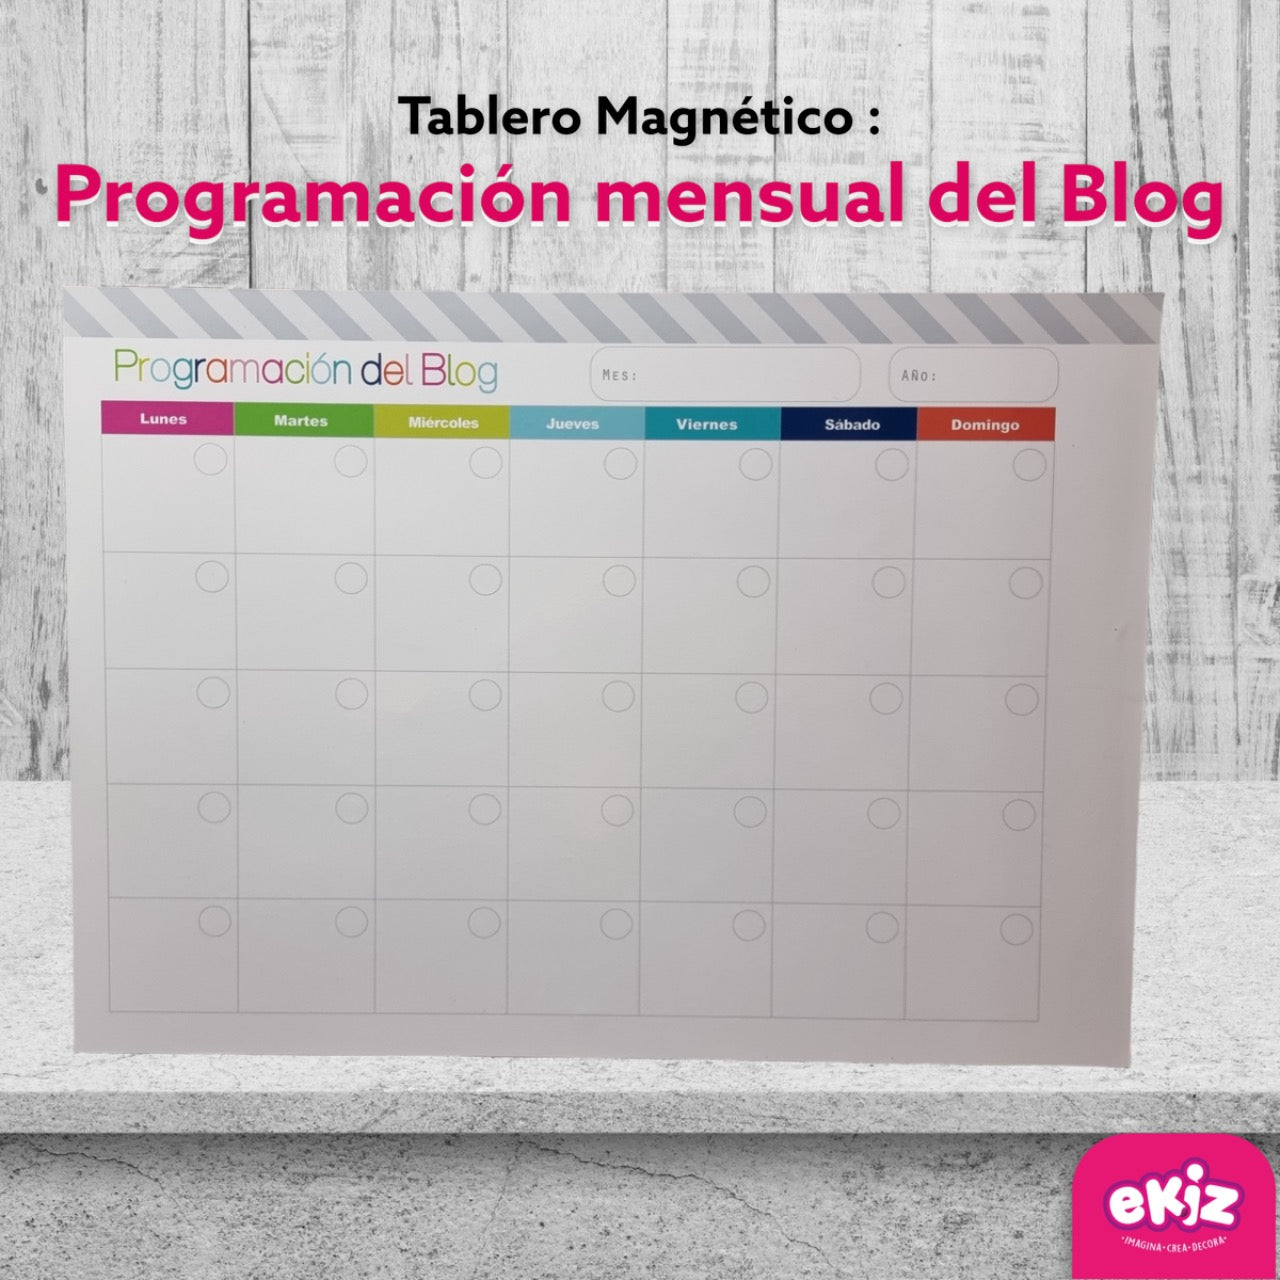 Tablero magnético: Programación mensual del blog - Ekiz